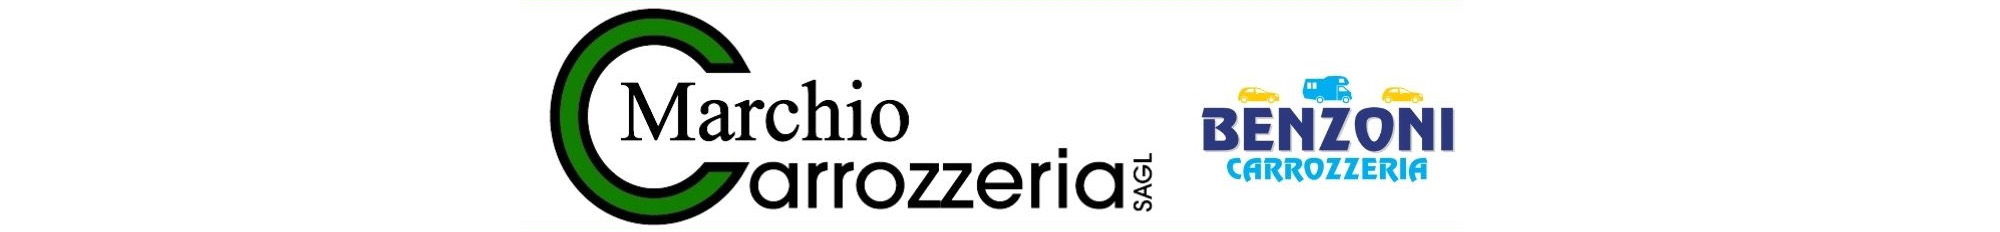 carrozzeria-marchio-banner-medicusinfo